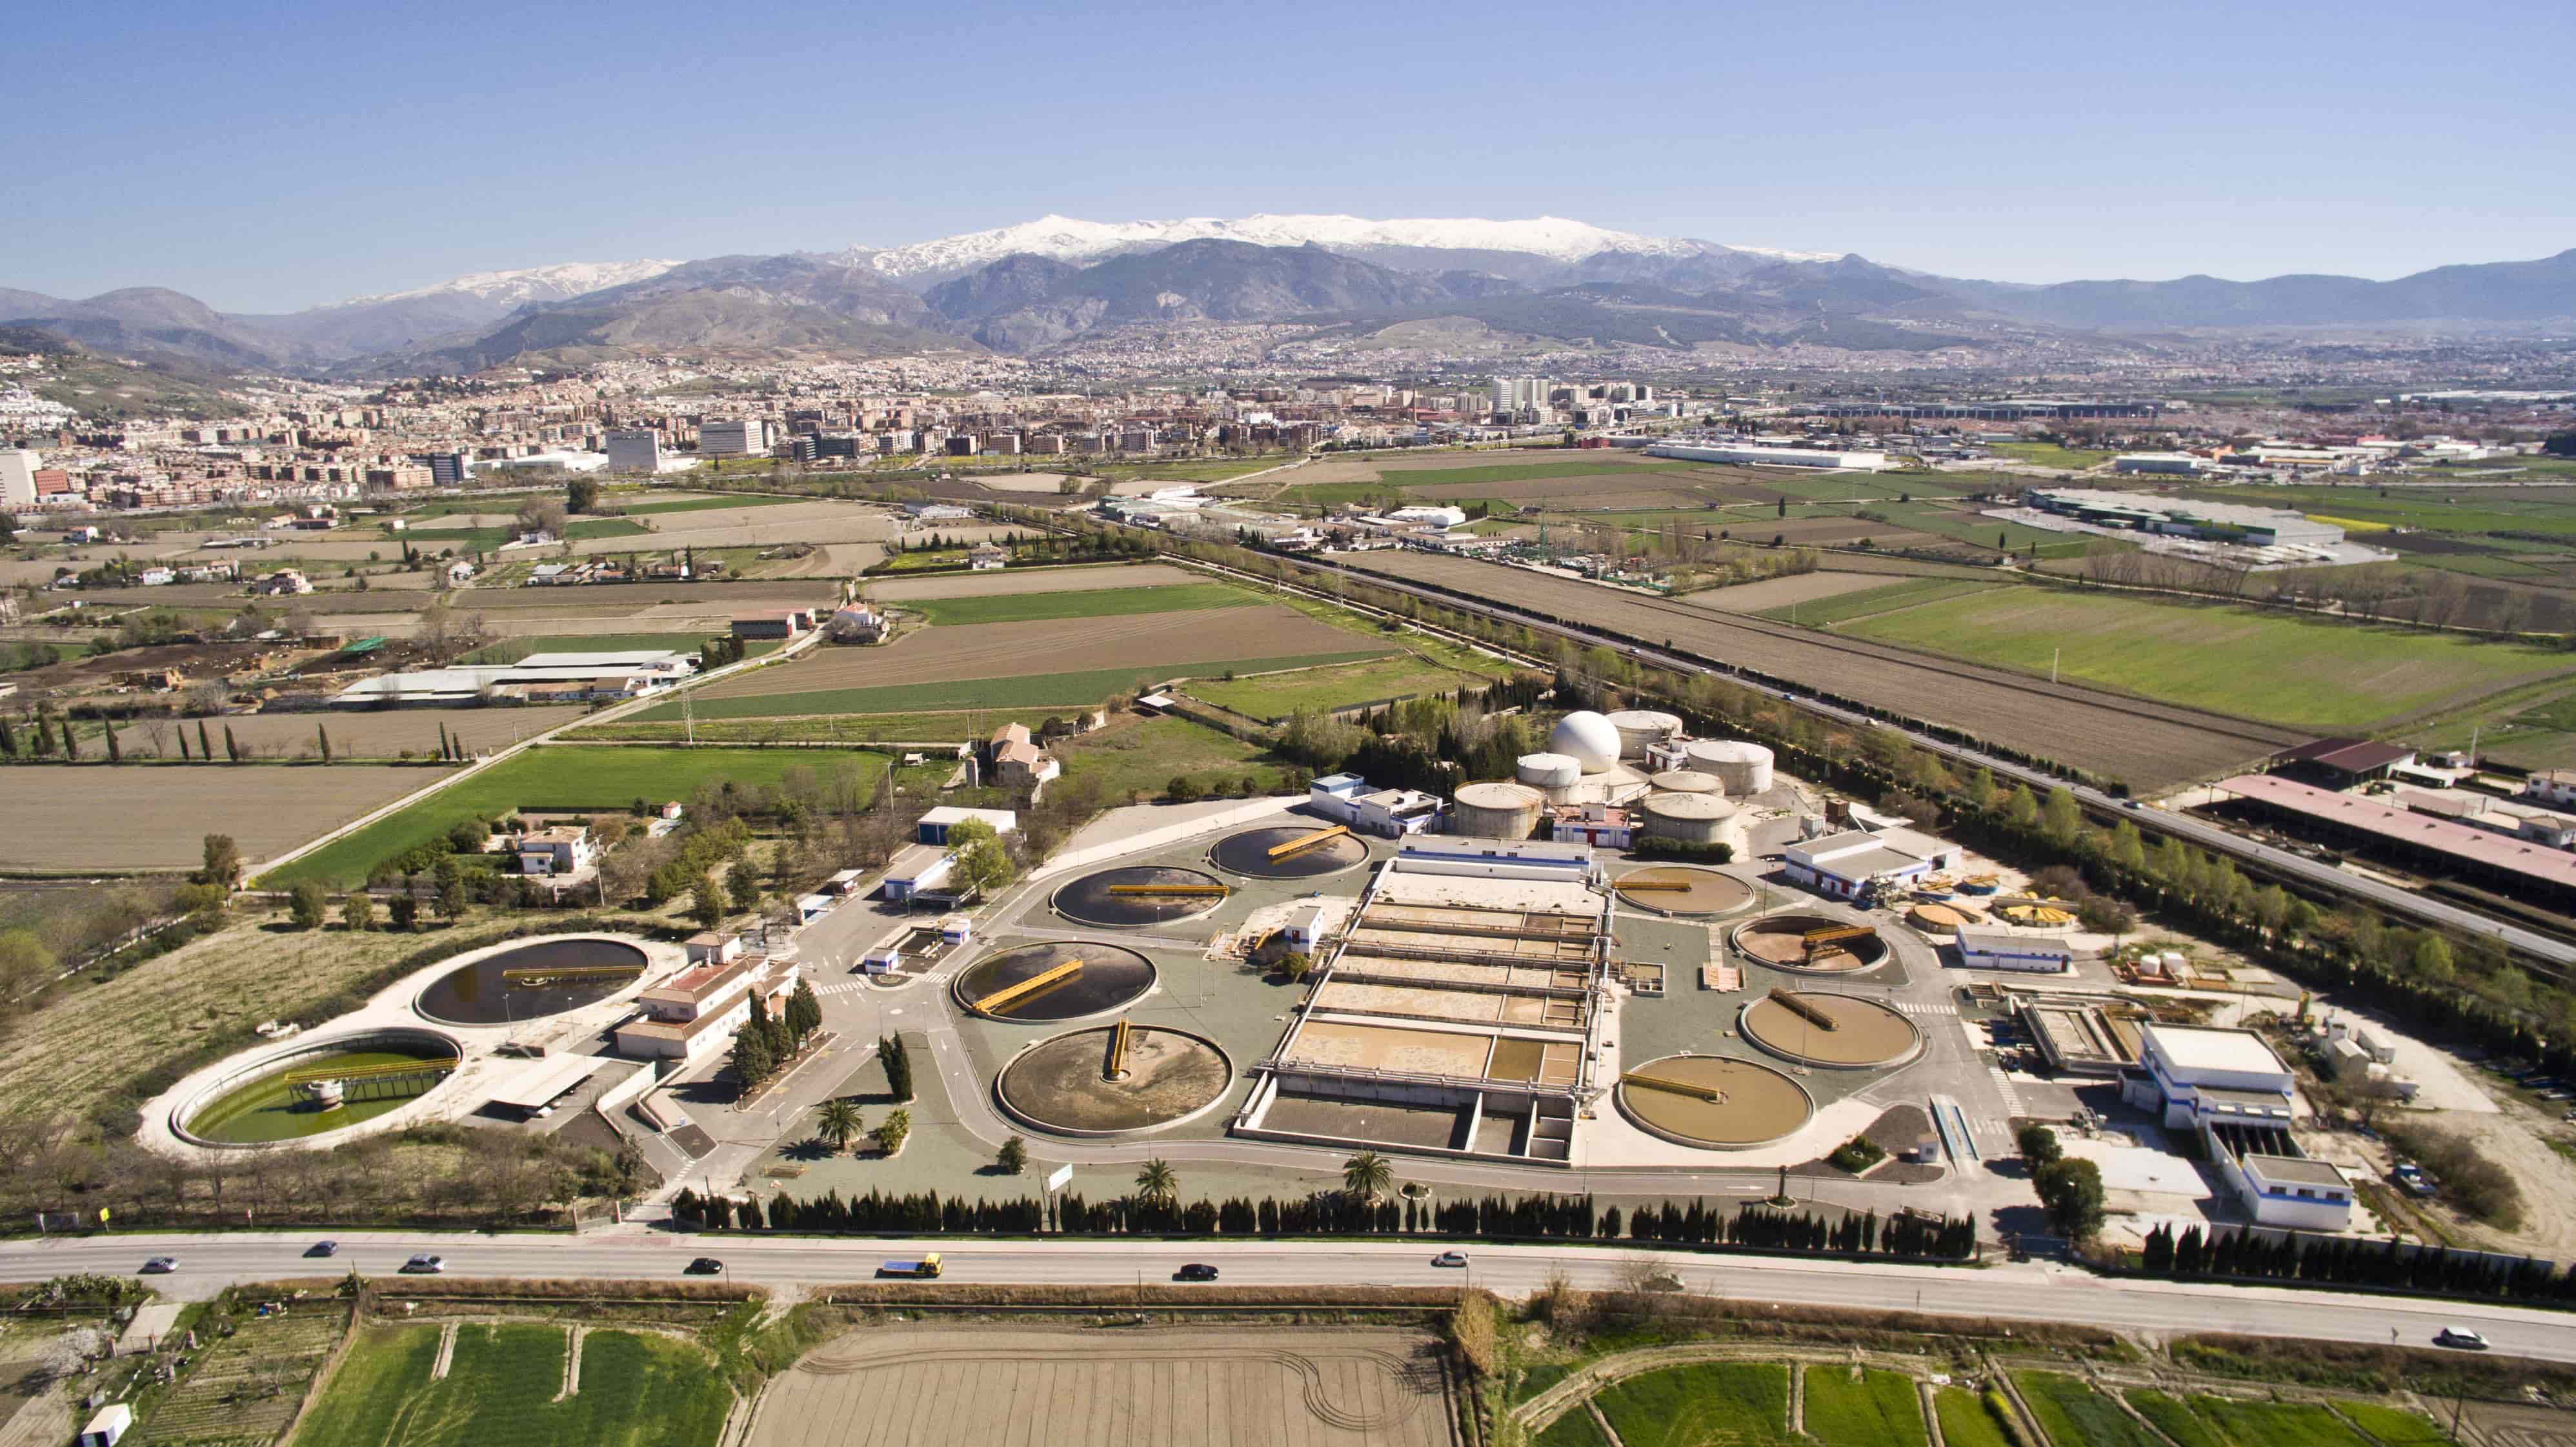 La biofactoría Sur de Granada, gestionada por Emasagra, filial de Agbar.